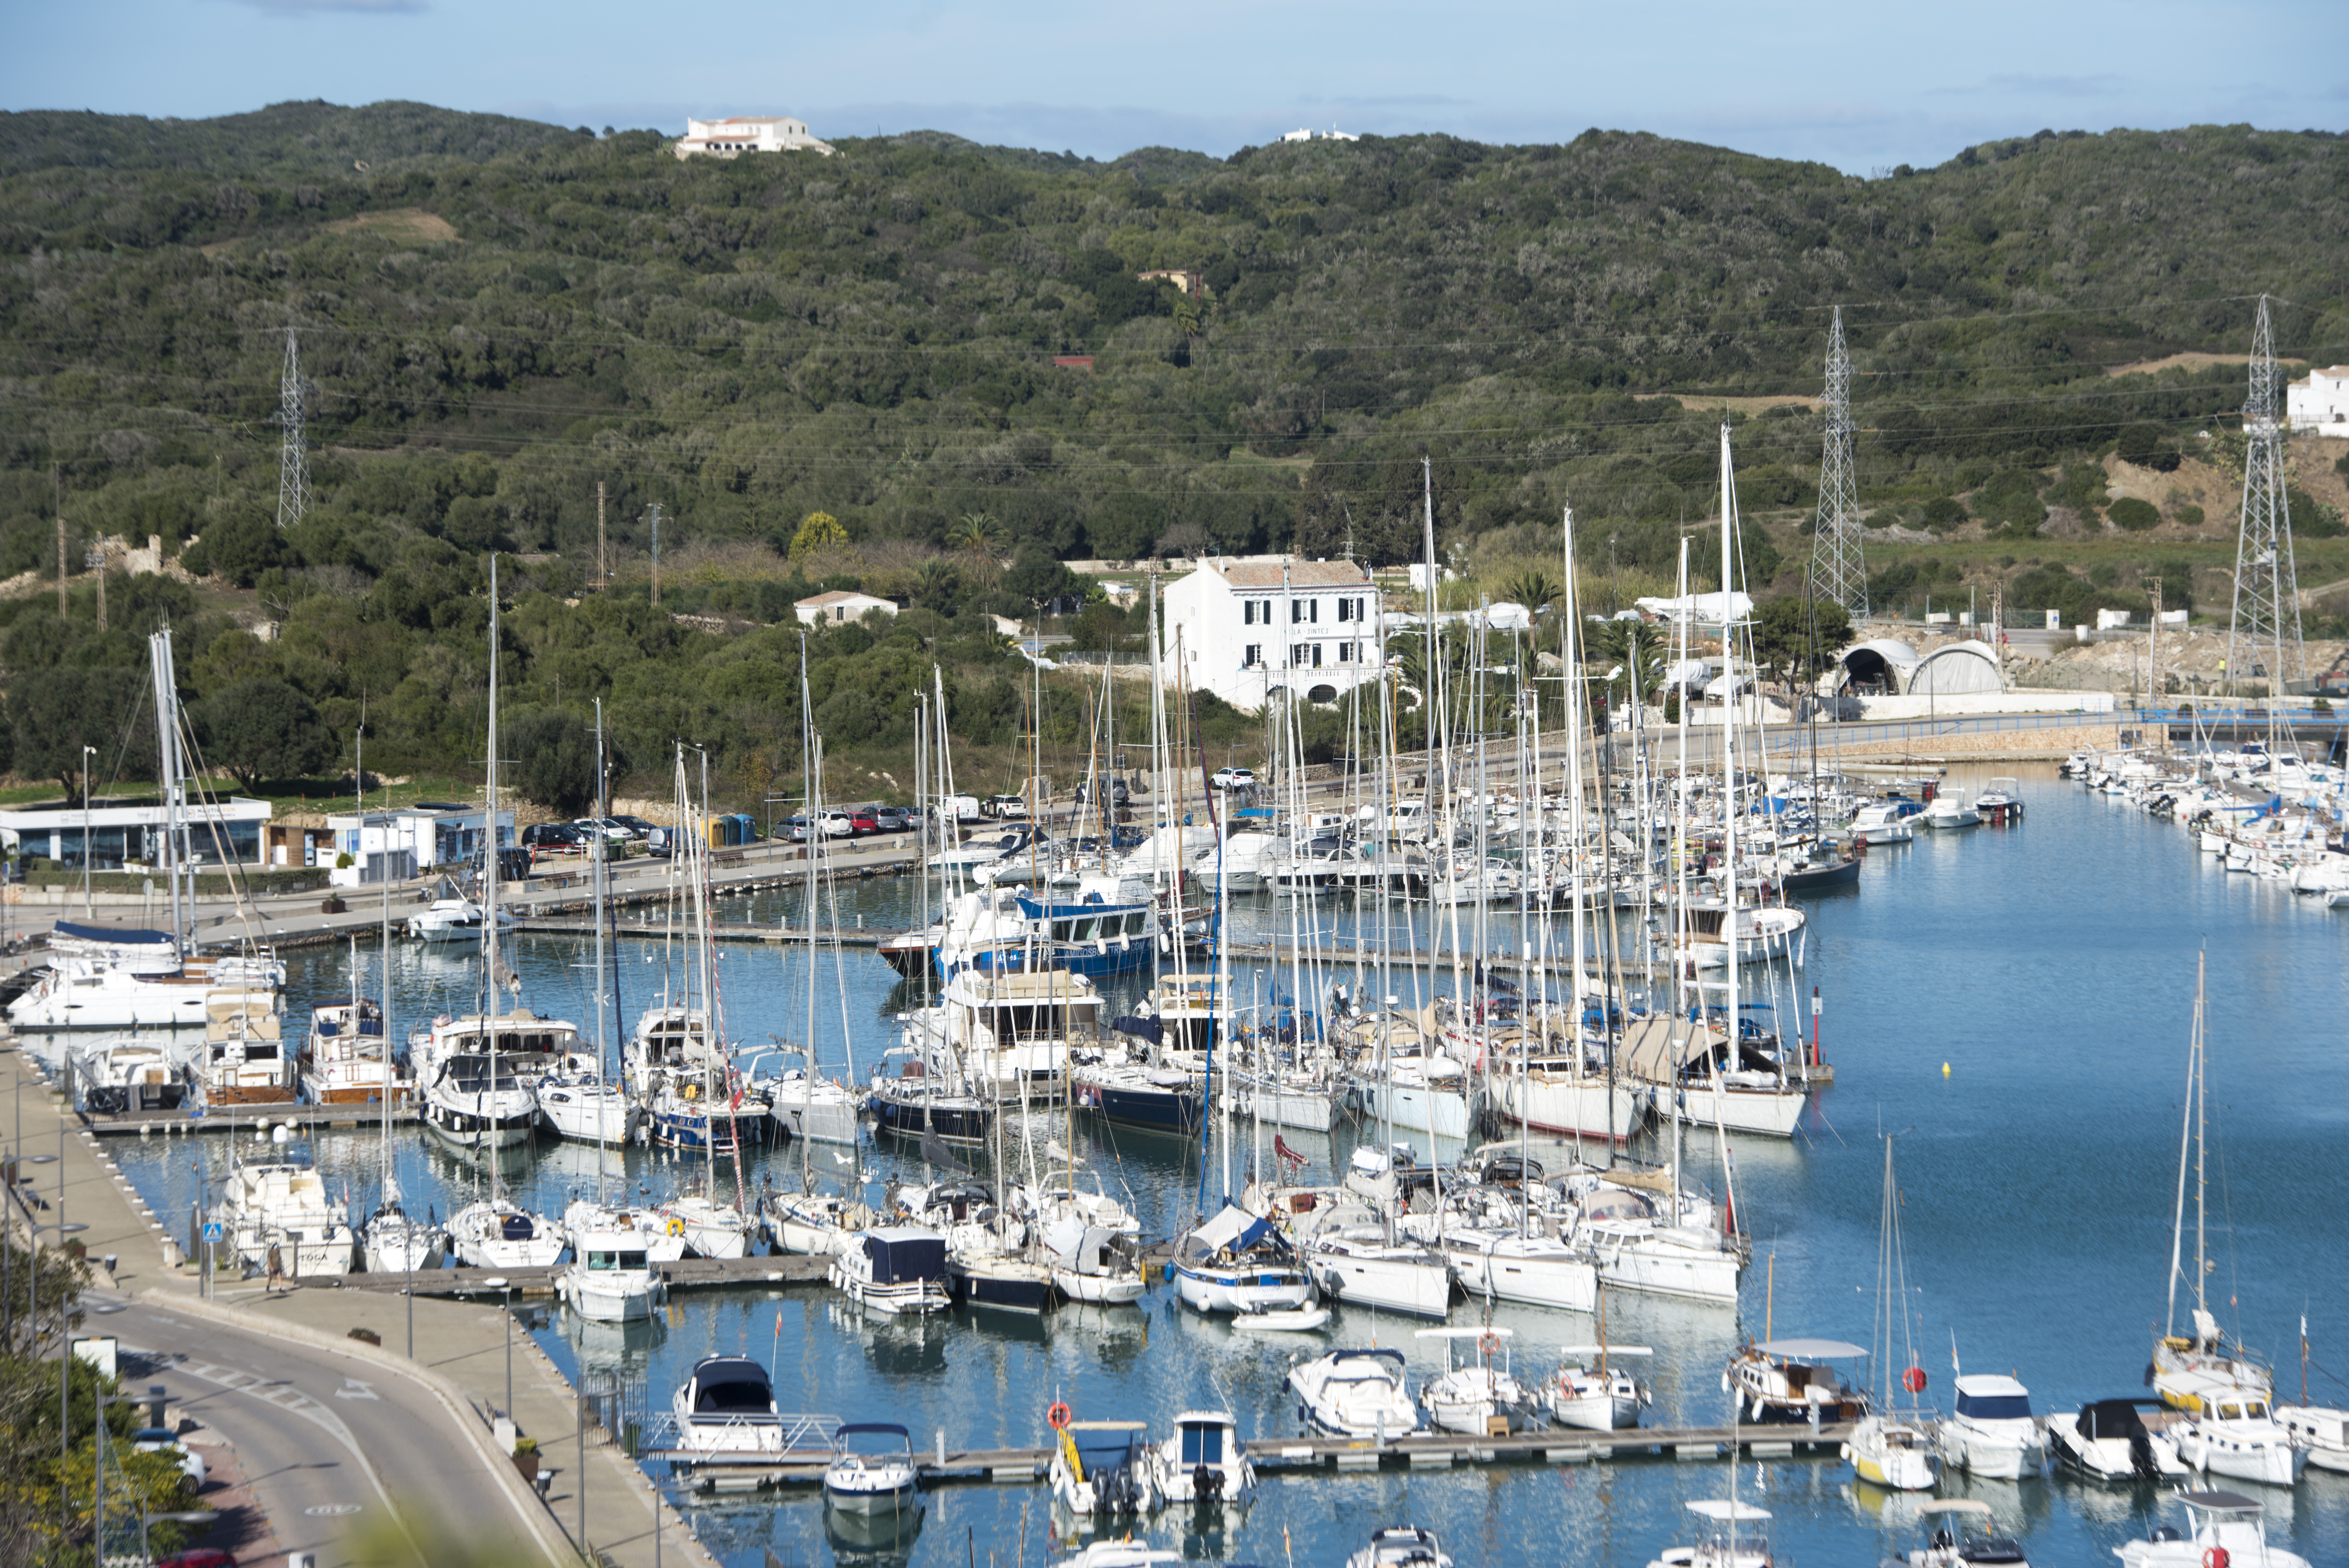 Die APB wird die Verwaltung der Liegeplätze im Bereich Colársega im Hafen von Maó ausschreiben